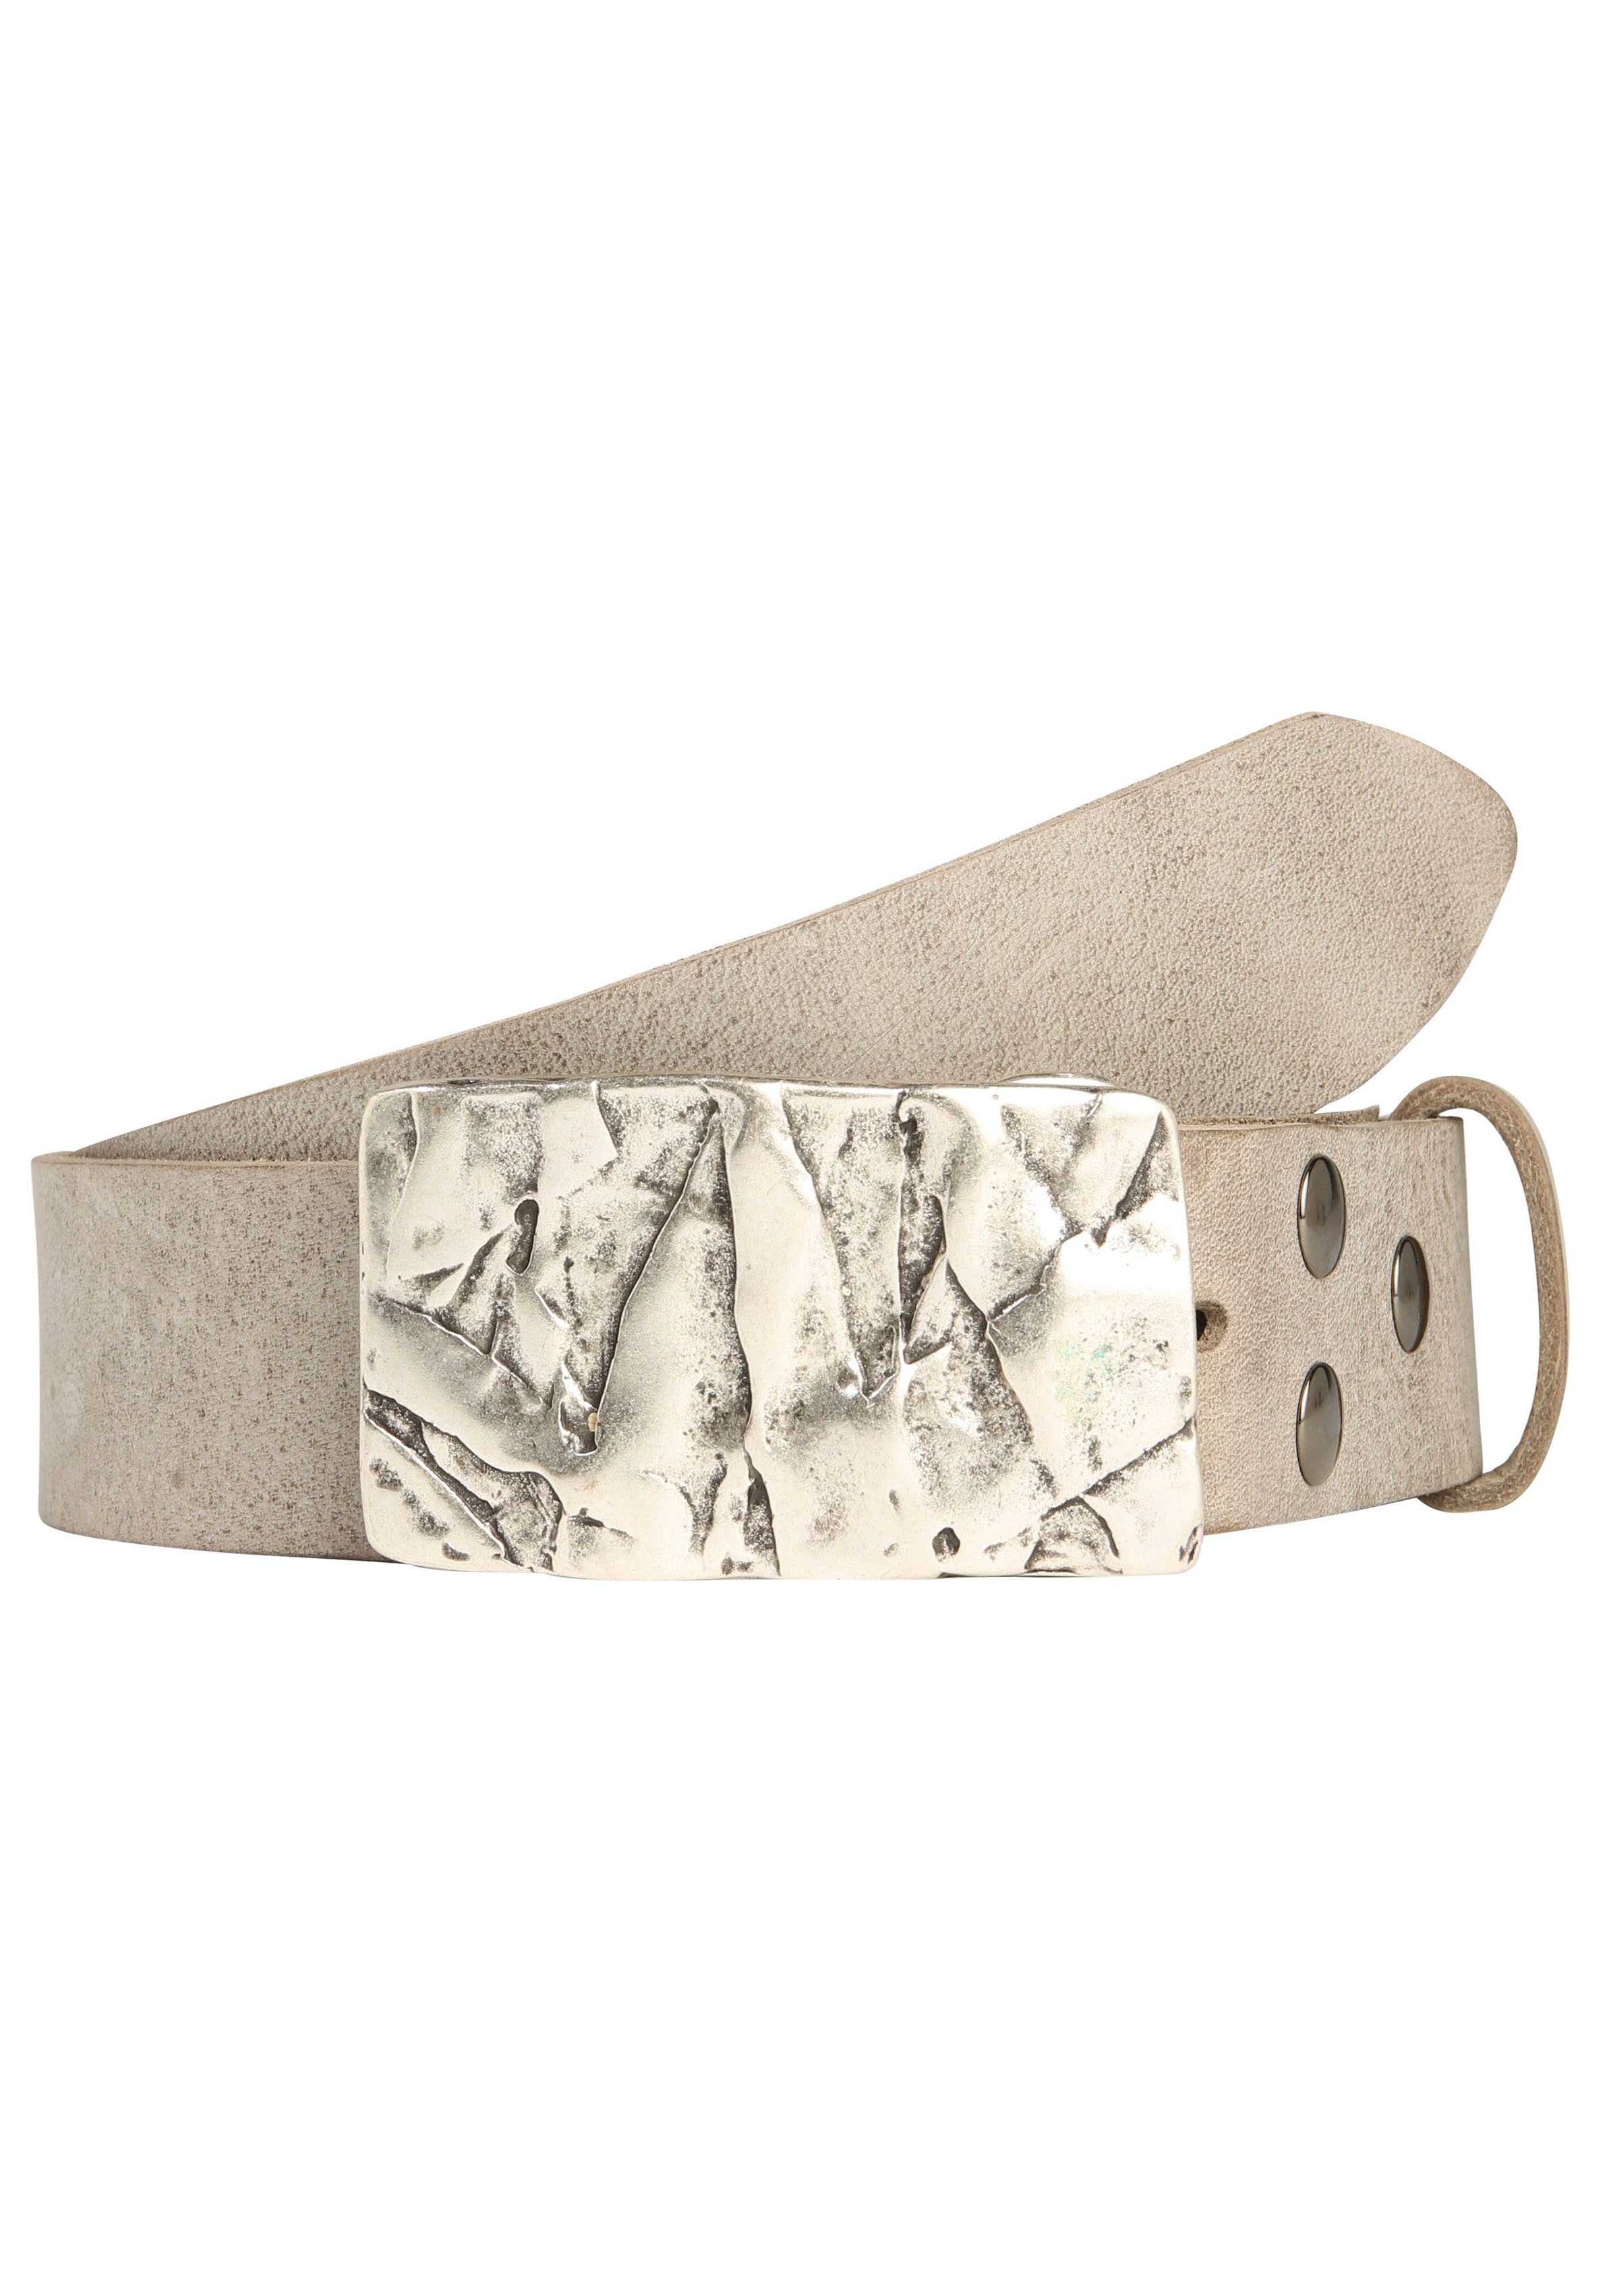 Silber« Ledergürtel by mit austauschbarer RETTUNGSRING »Felswand Schließe showroom 019°